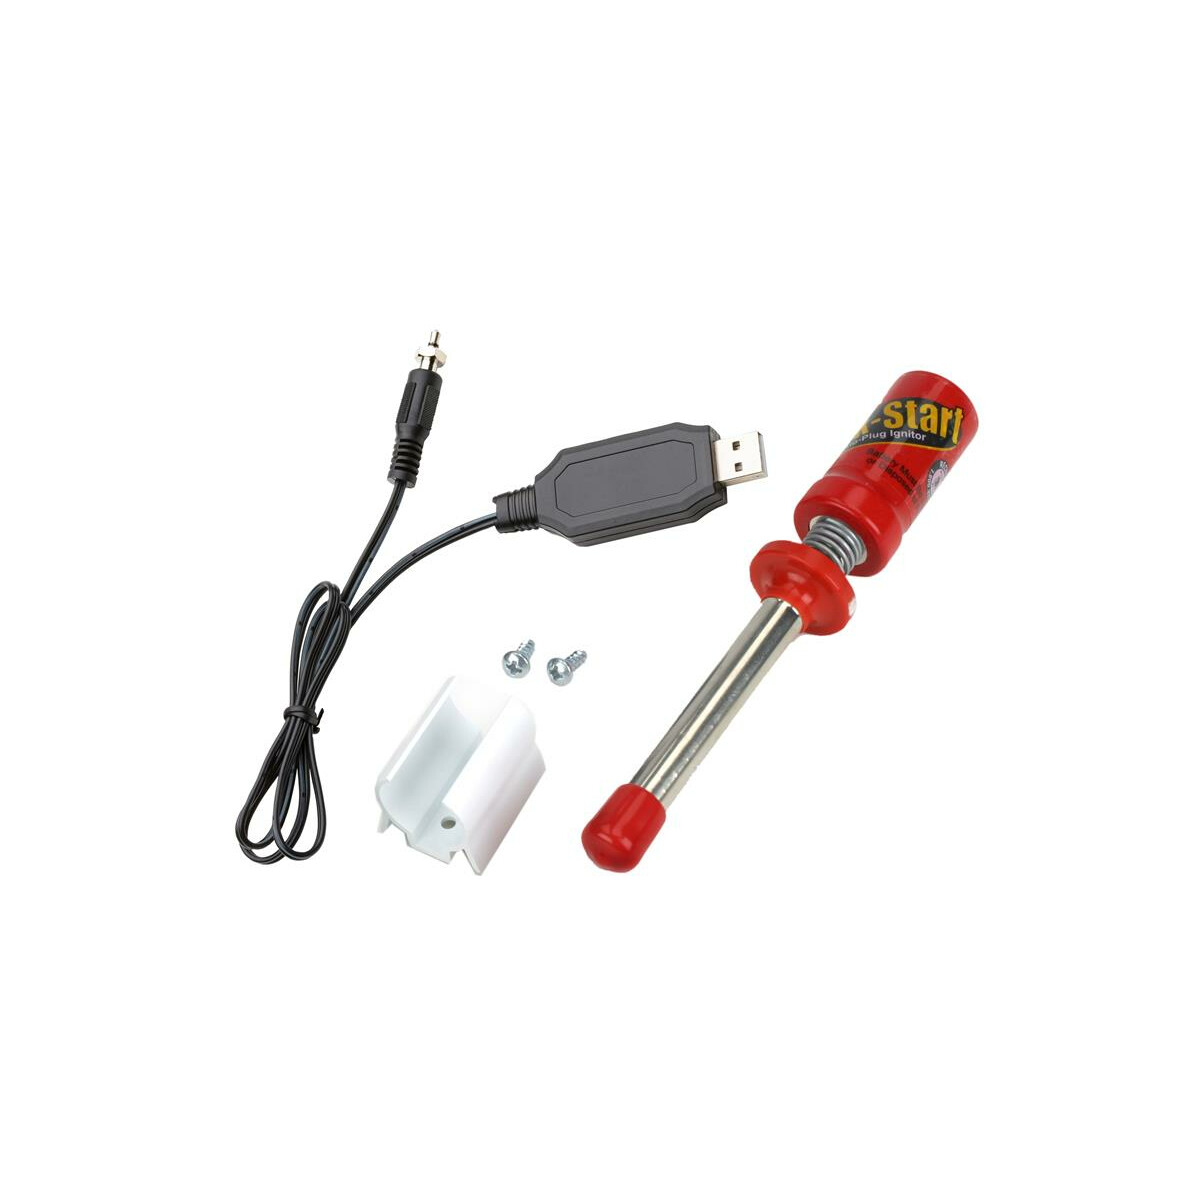 Kerzenstecker XL mit Akku und USB-Ladekabel